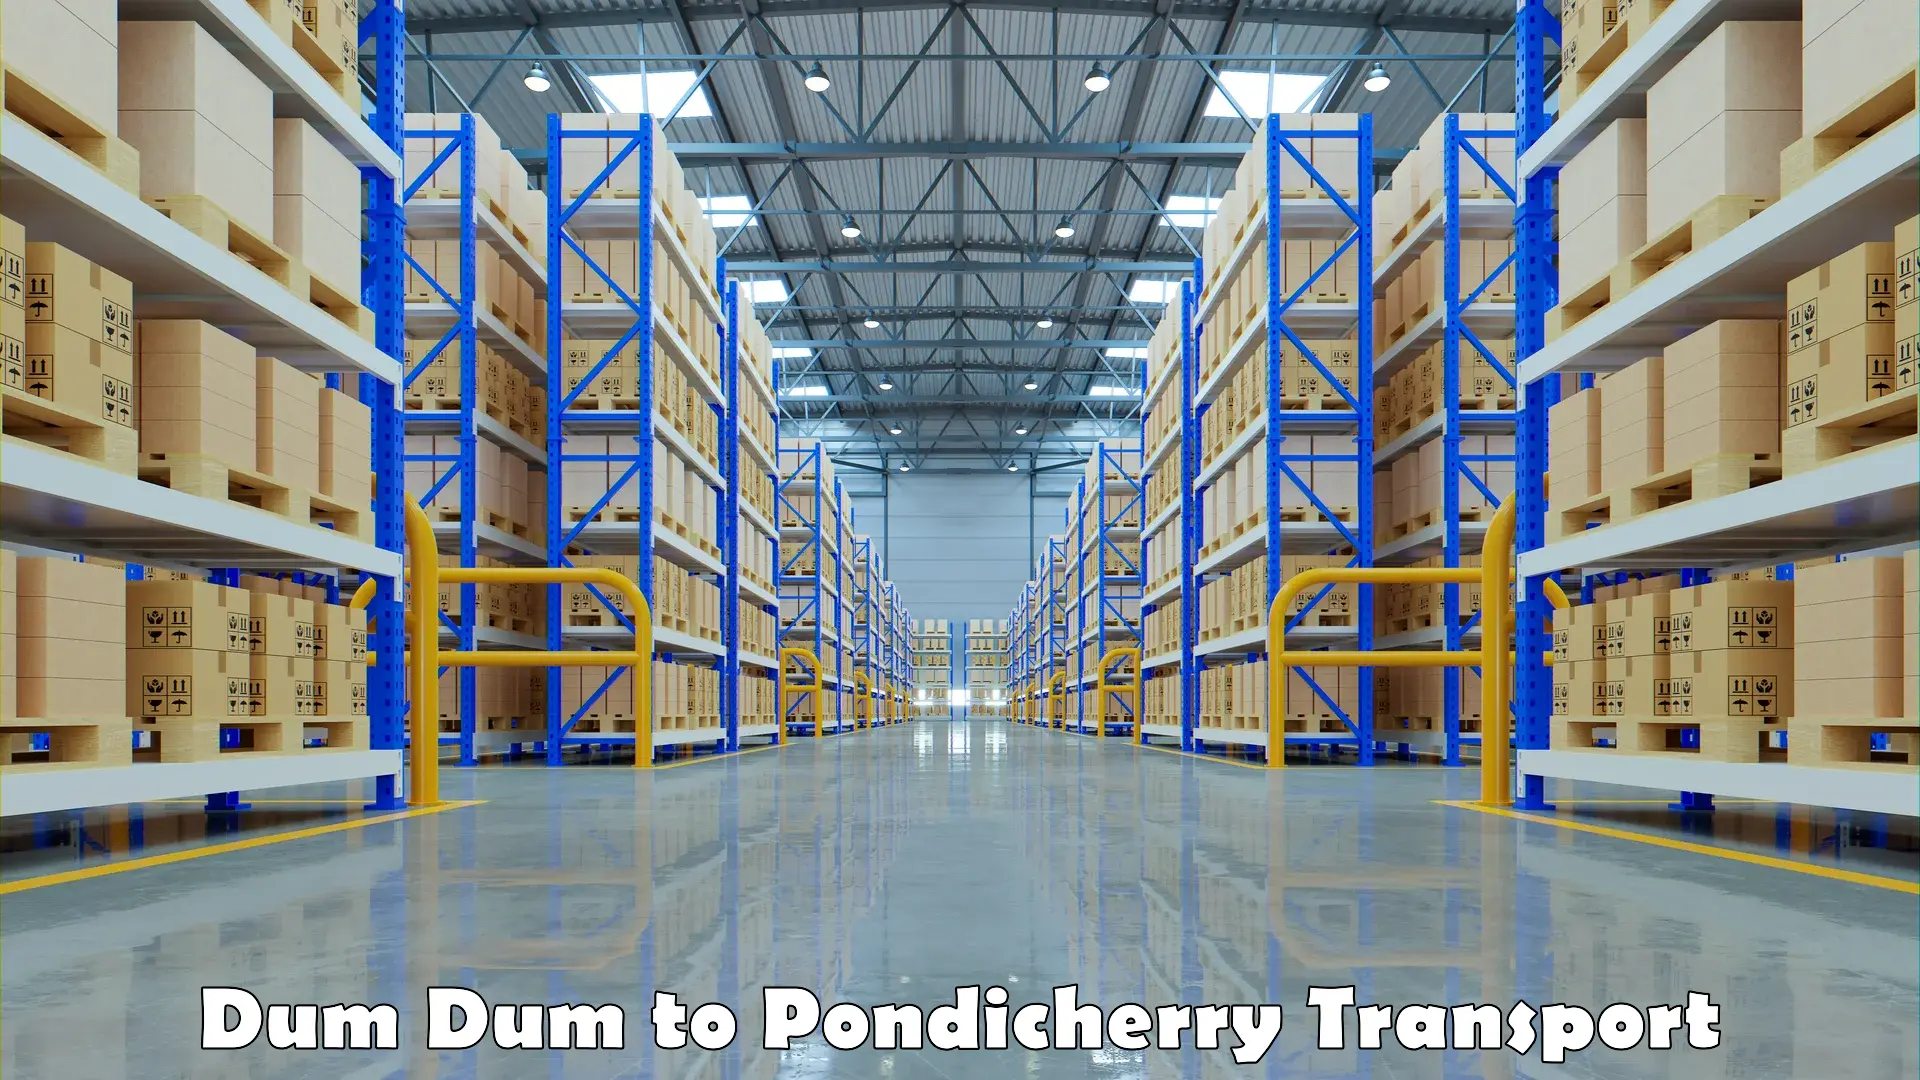 Transport shared services Dum Dum to Pondicherry